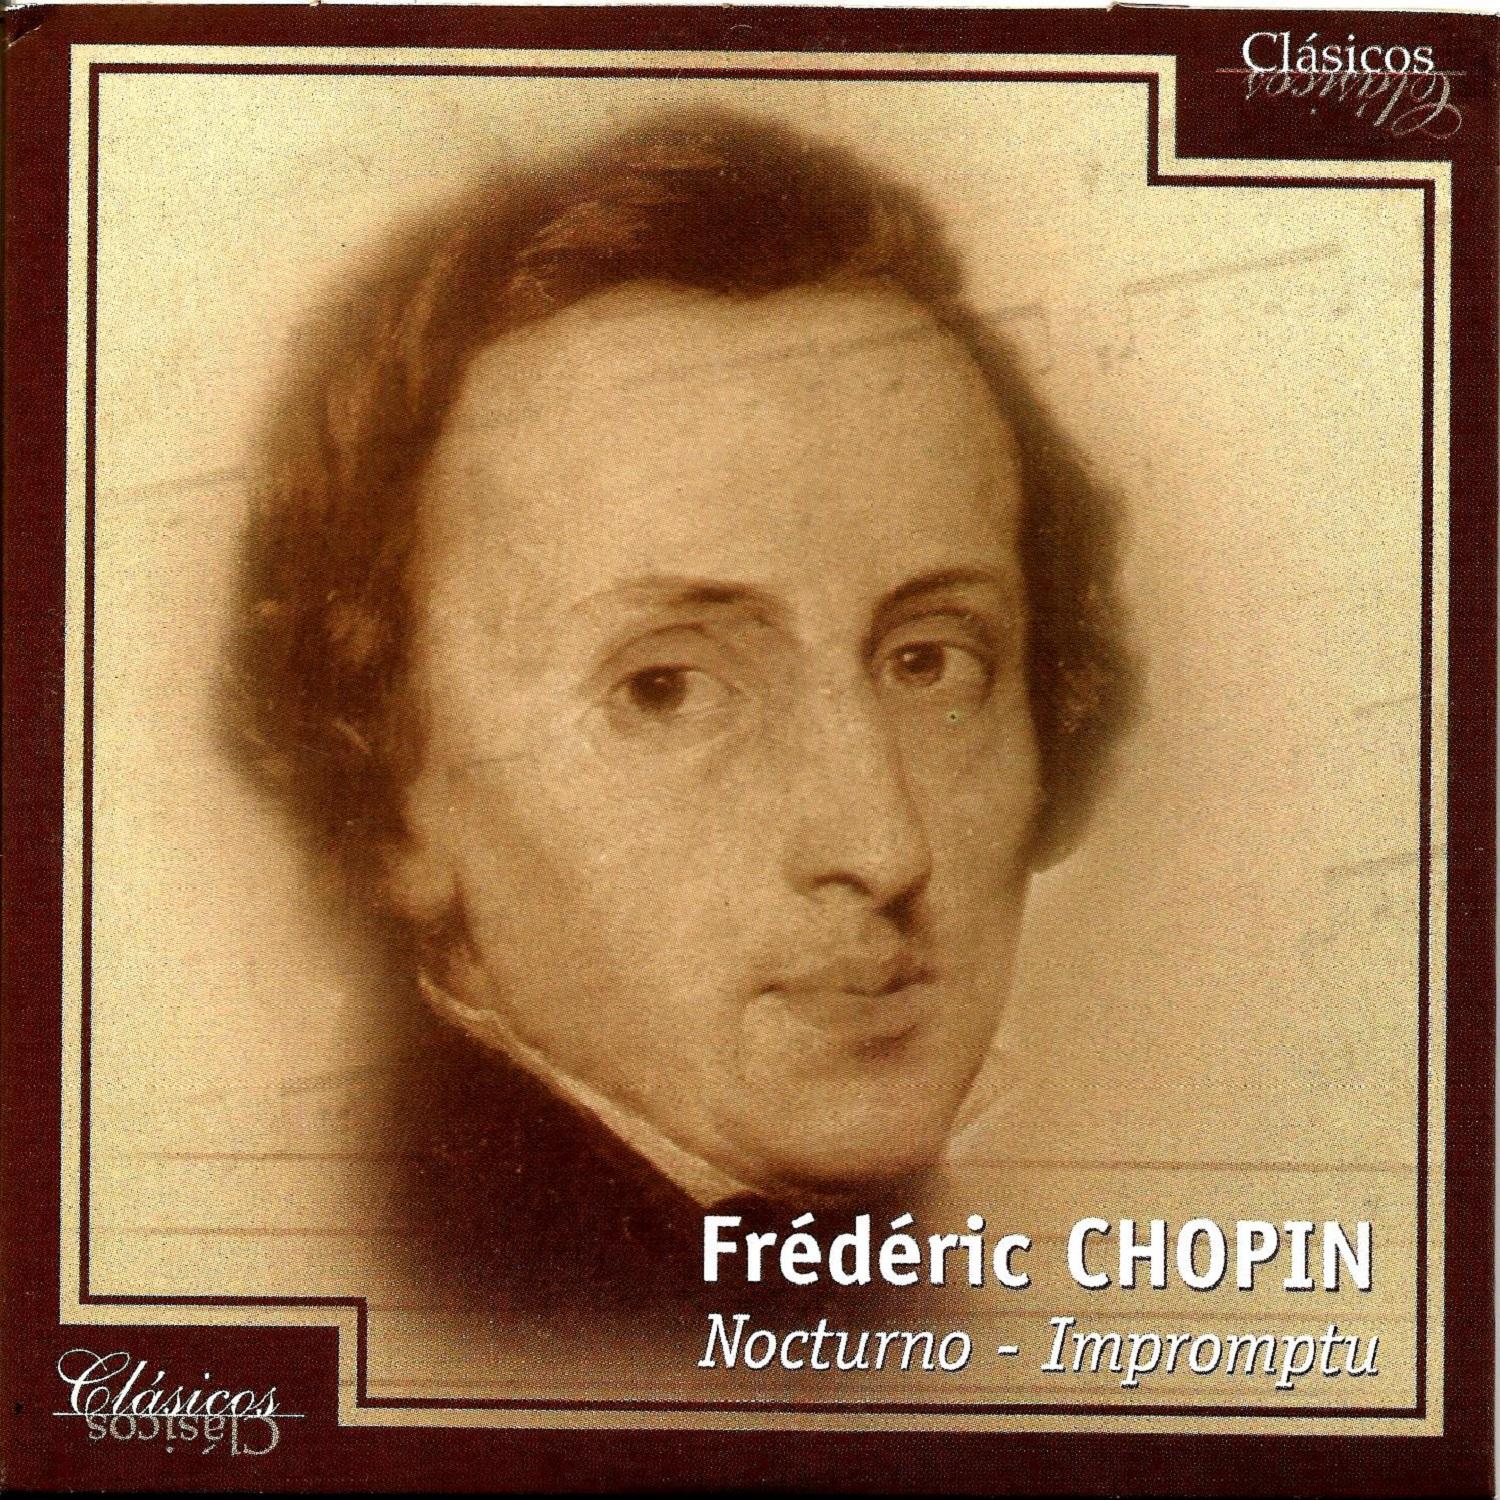 Fre de ric Chopin, Nocturno  Impromptu